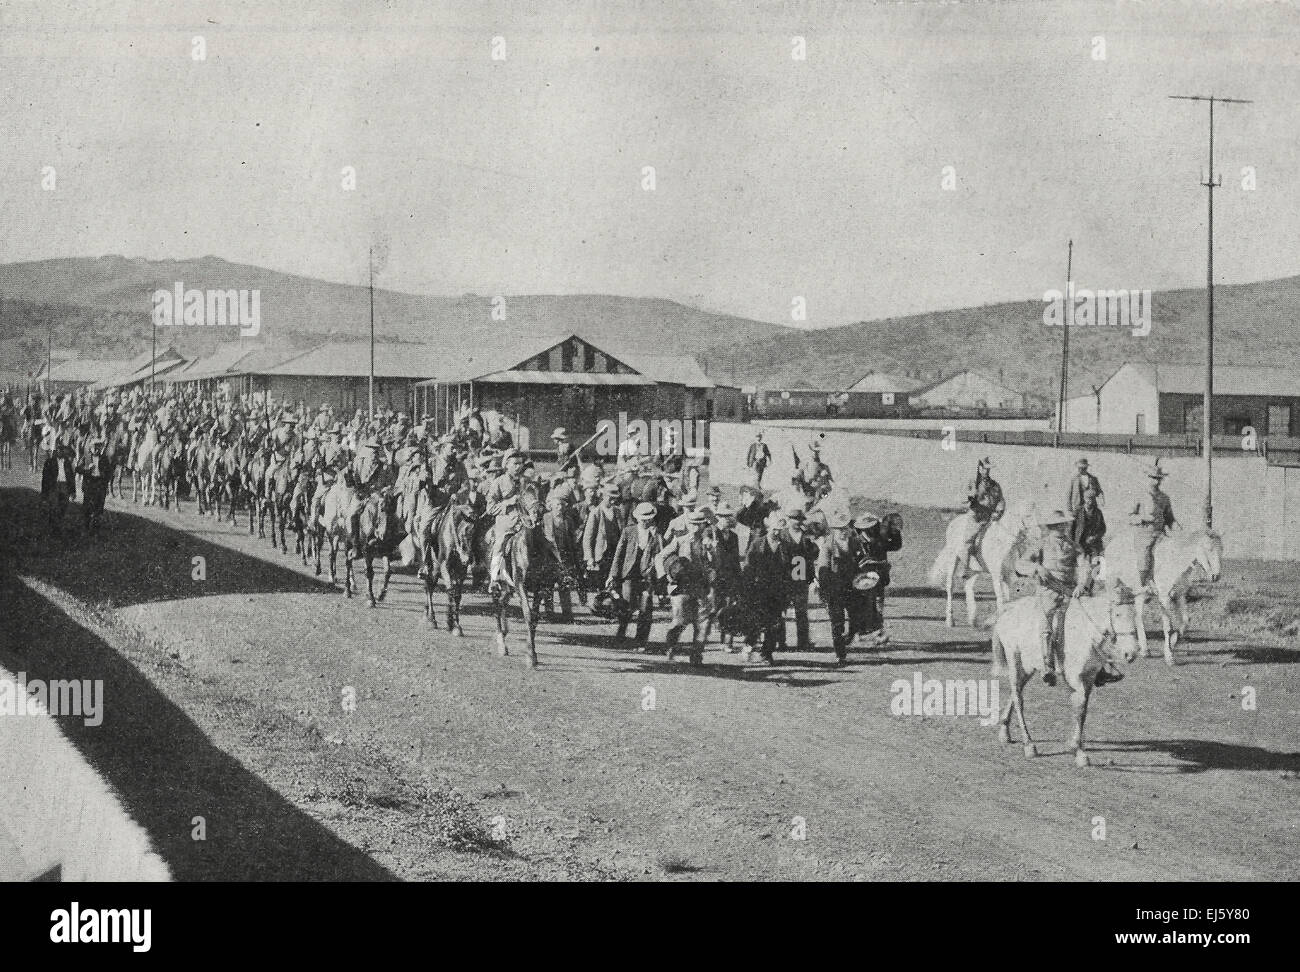 Les prisonniers civils entrant de Dundee Pretoria le 10 novembre 1899, au cours de la Deuxième Guerre des Boers Banque D'Images